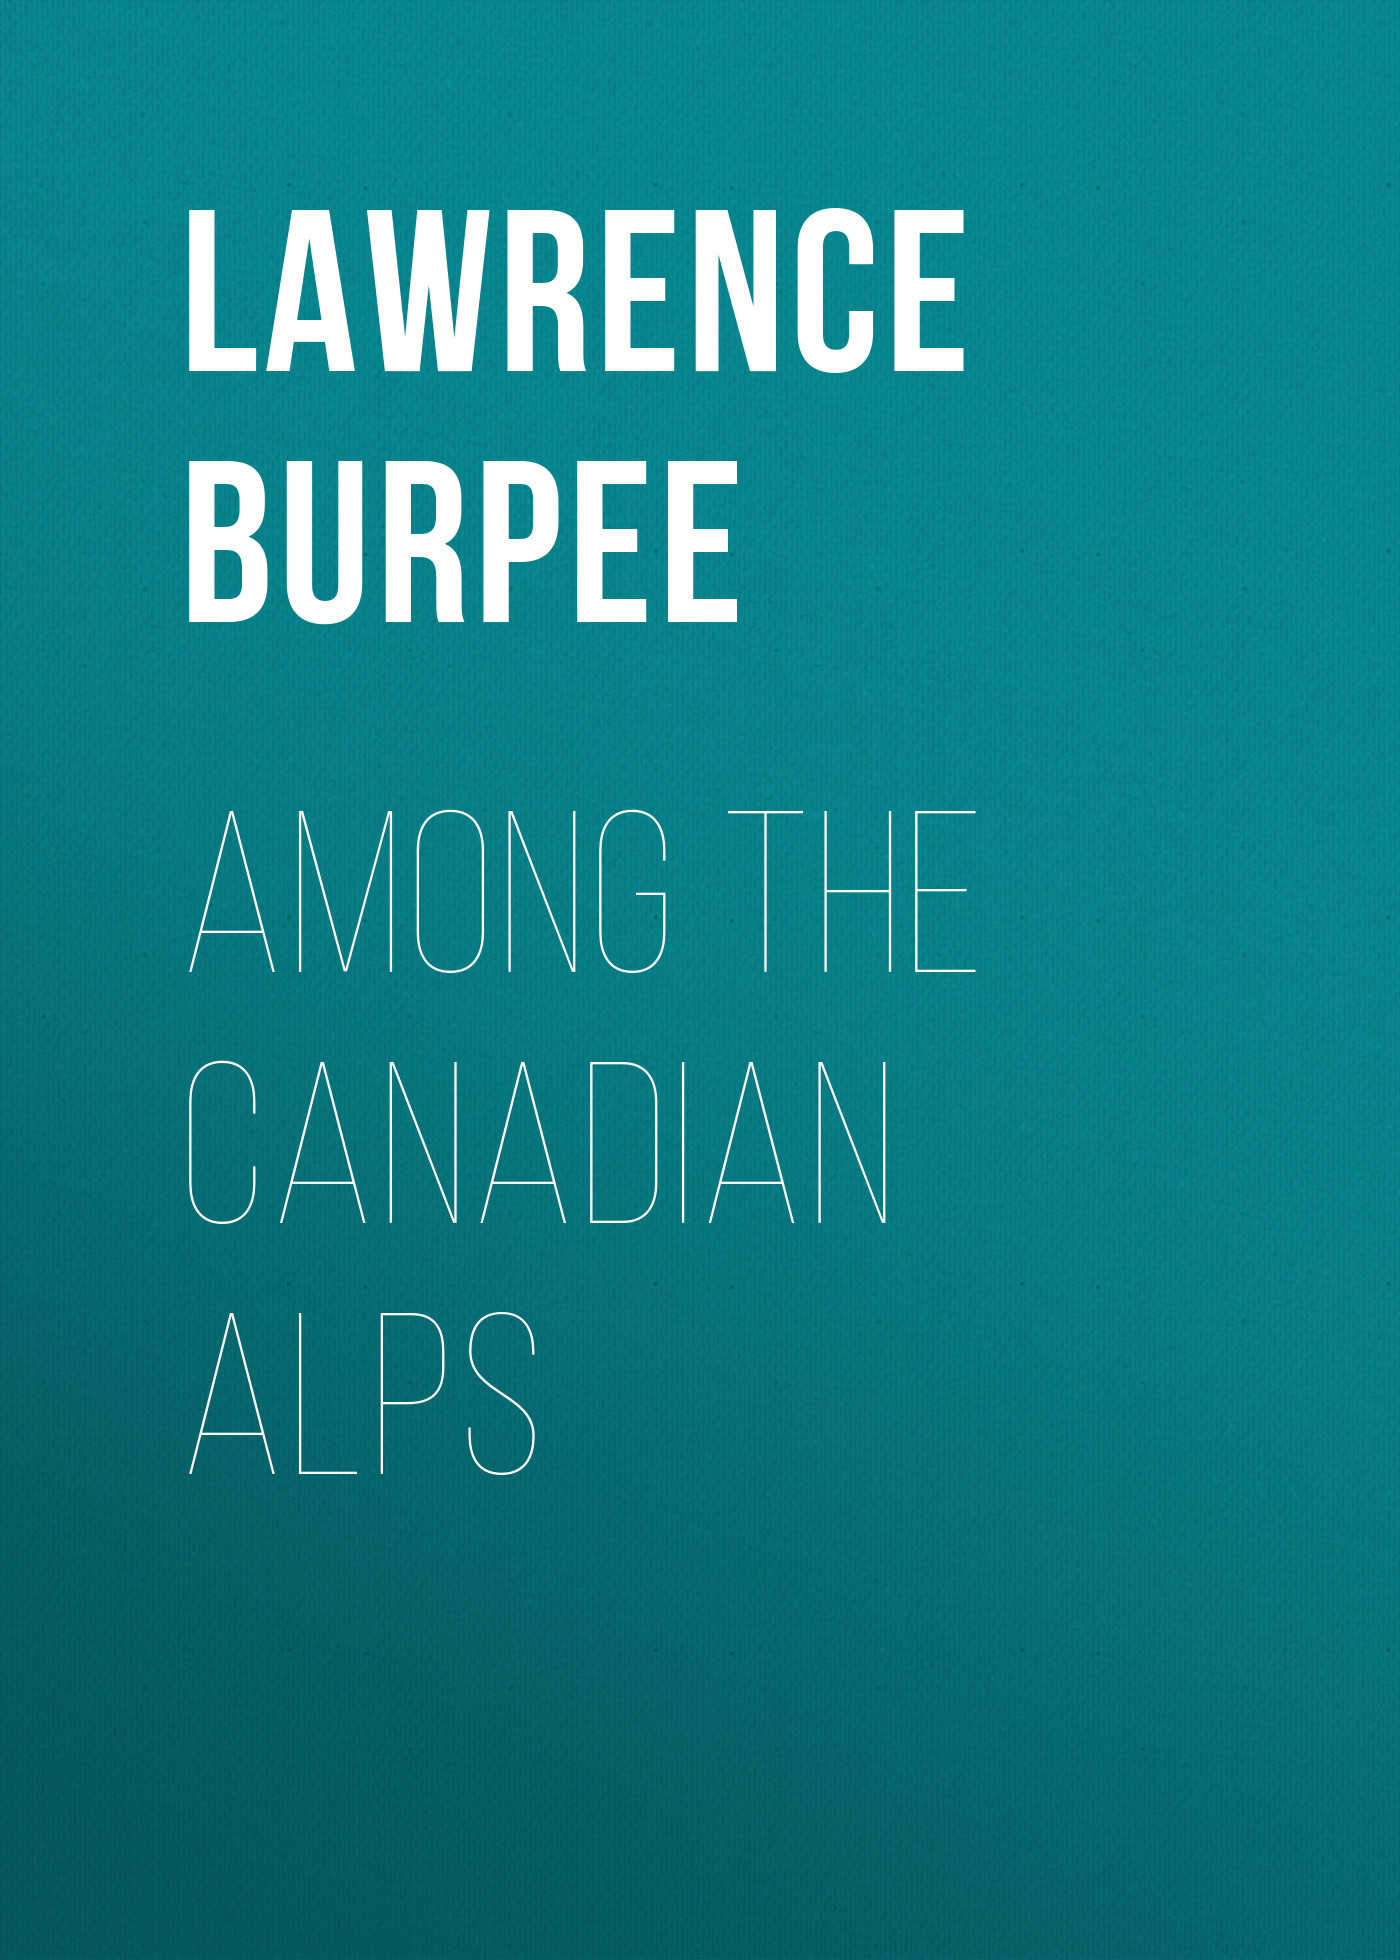 Книга Among the Canadian Alps из серии , созданная Lawrence Burpee, может относится к жанру Зарубежная старинная литература, Зарубежная классика. Стоимость электронной книги Among the Canadian Alps с идентификатором 24180612 составляет 0.90 руб.